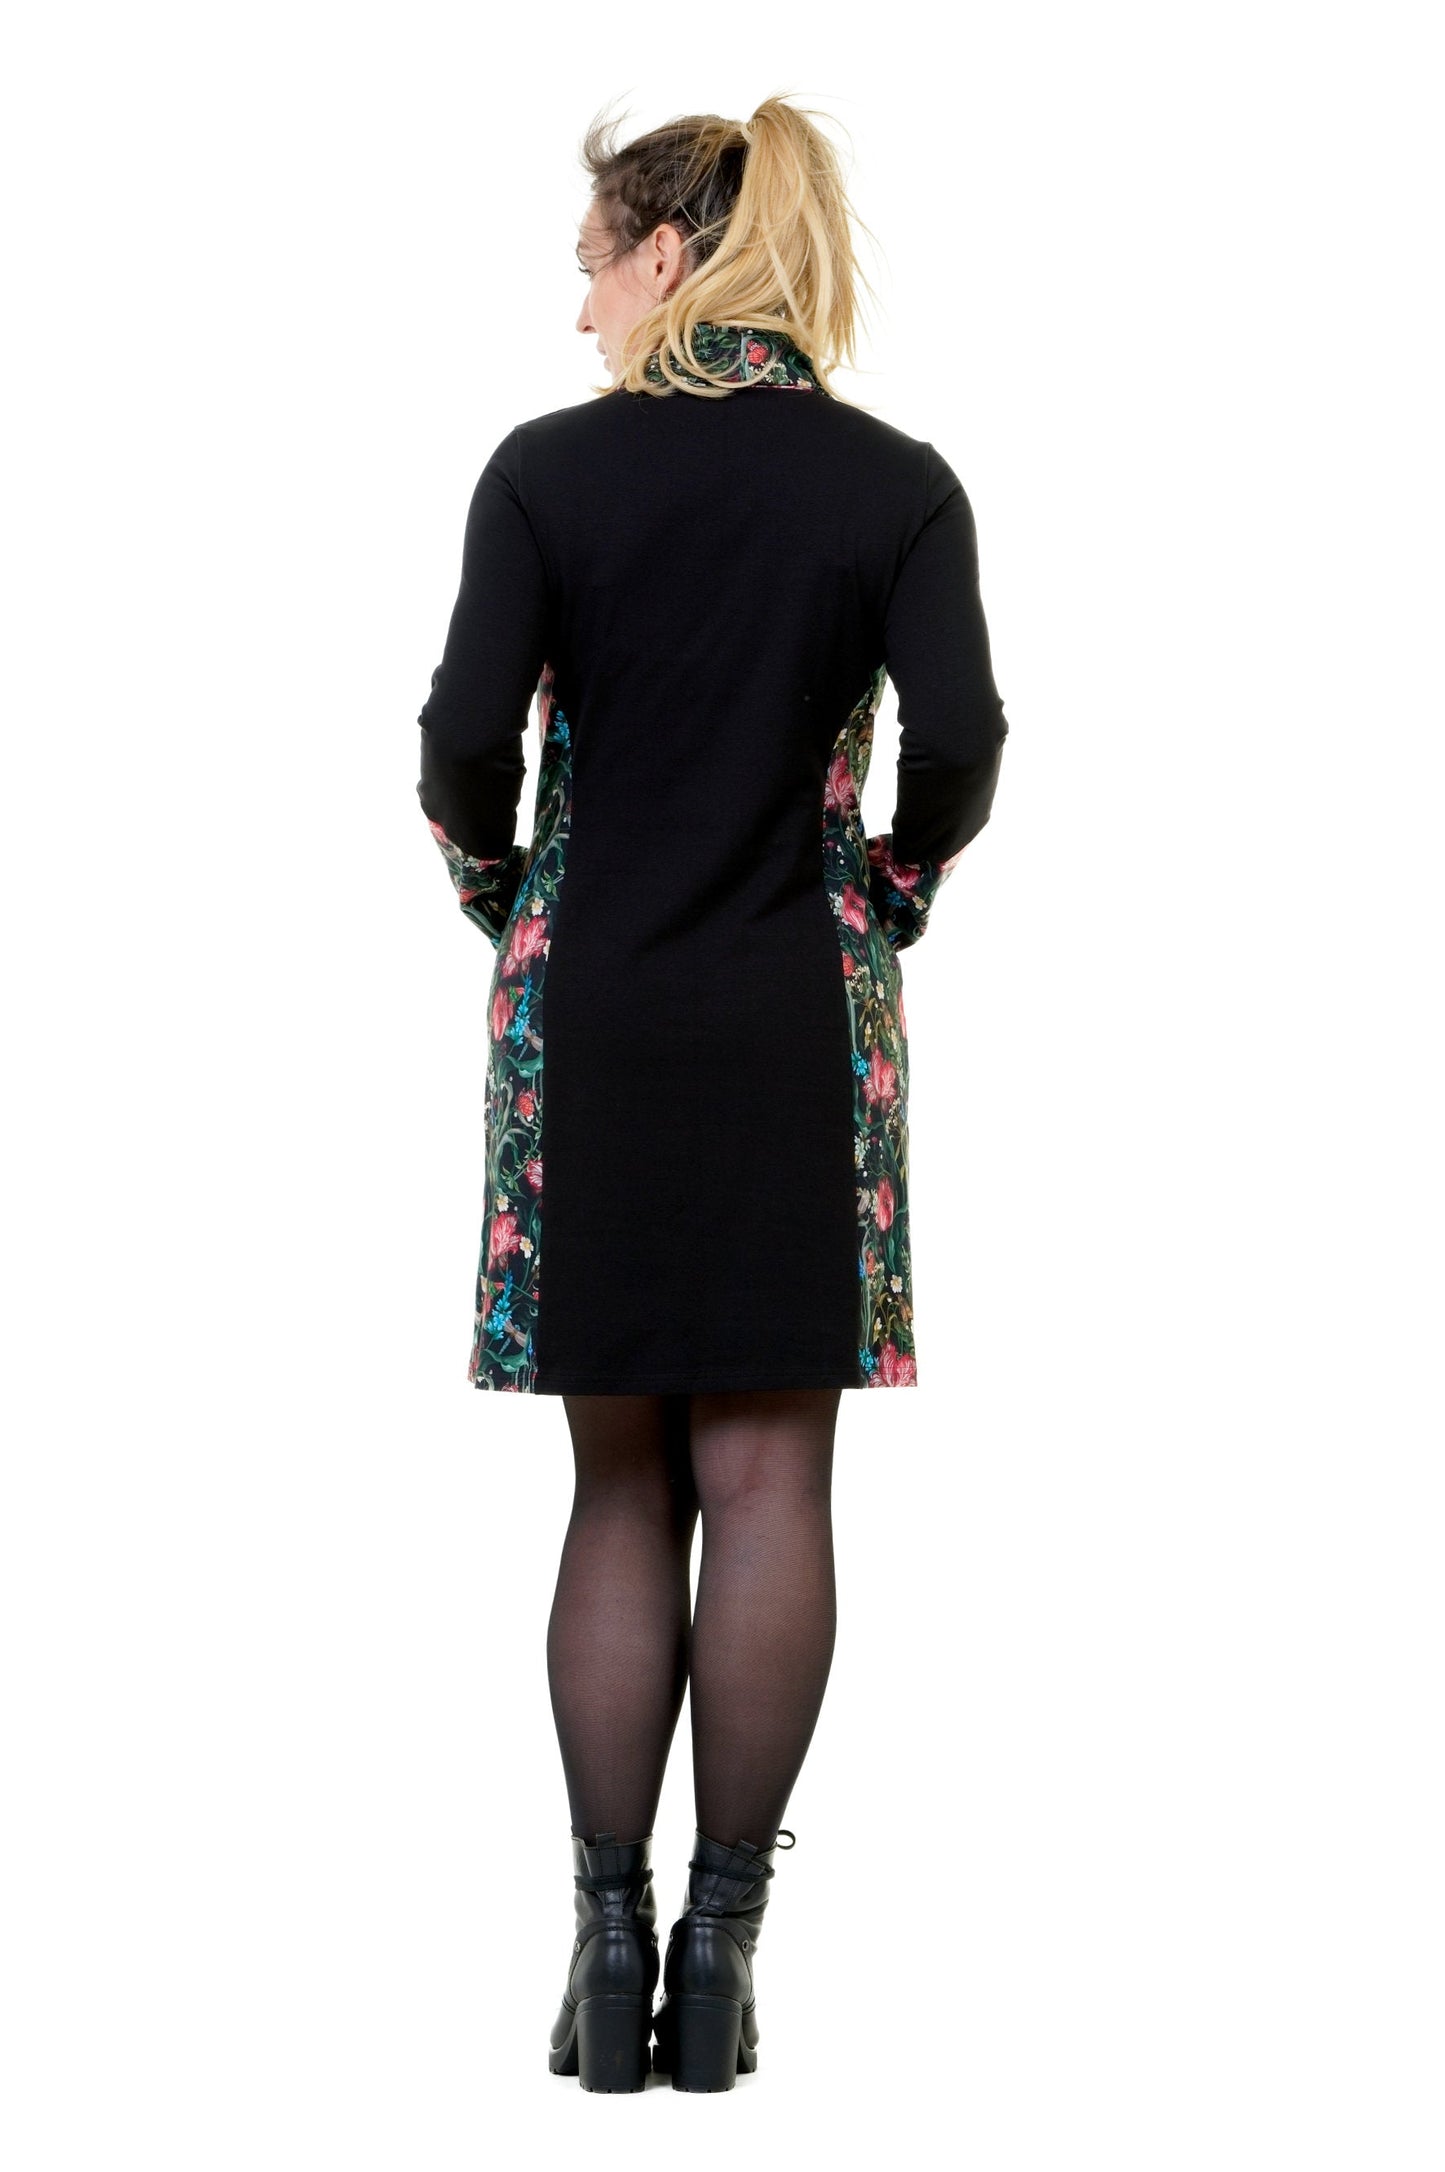 SALE Größe XS Herbstkönigin Kleid schwarz Dunkelbunt